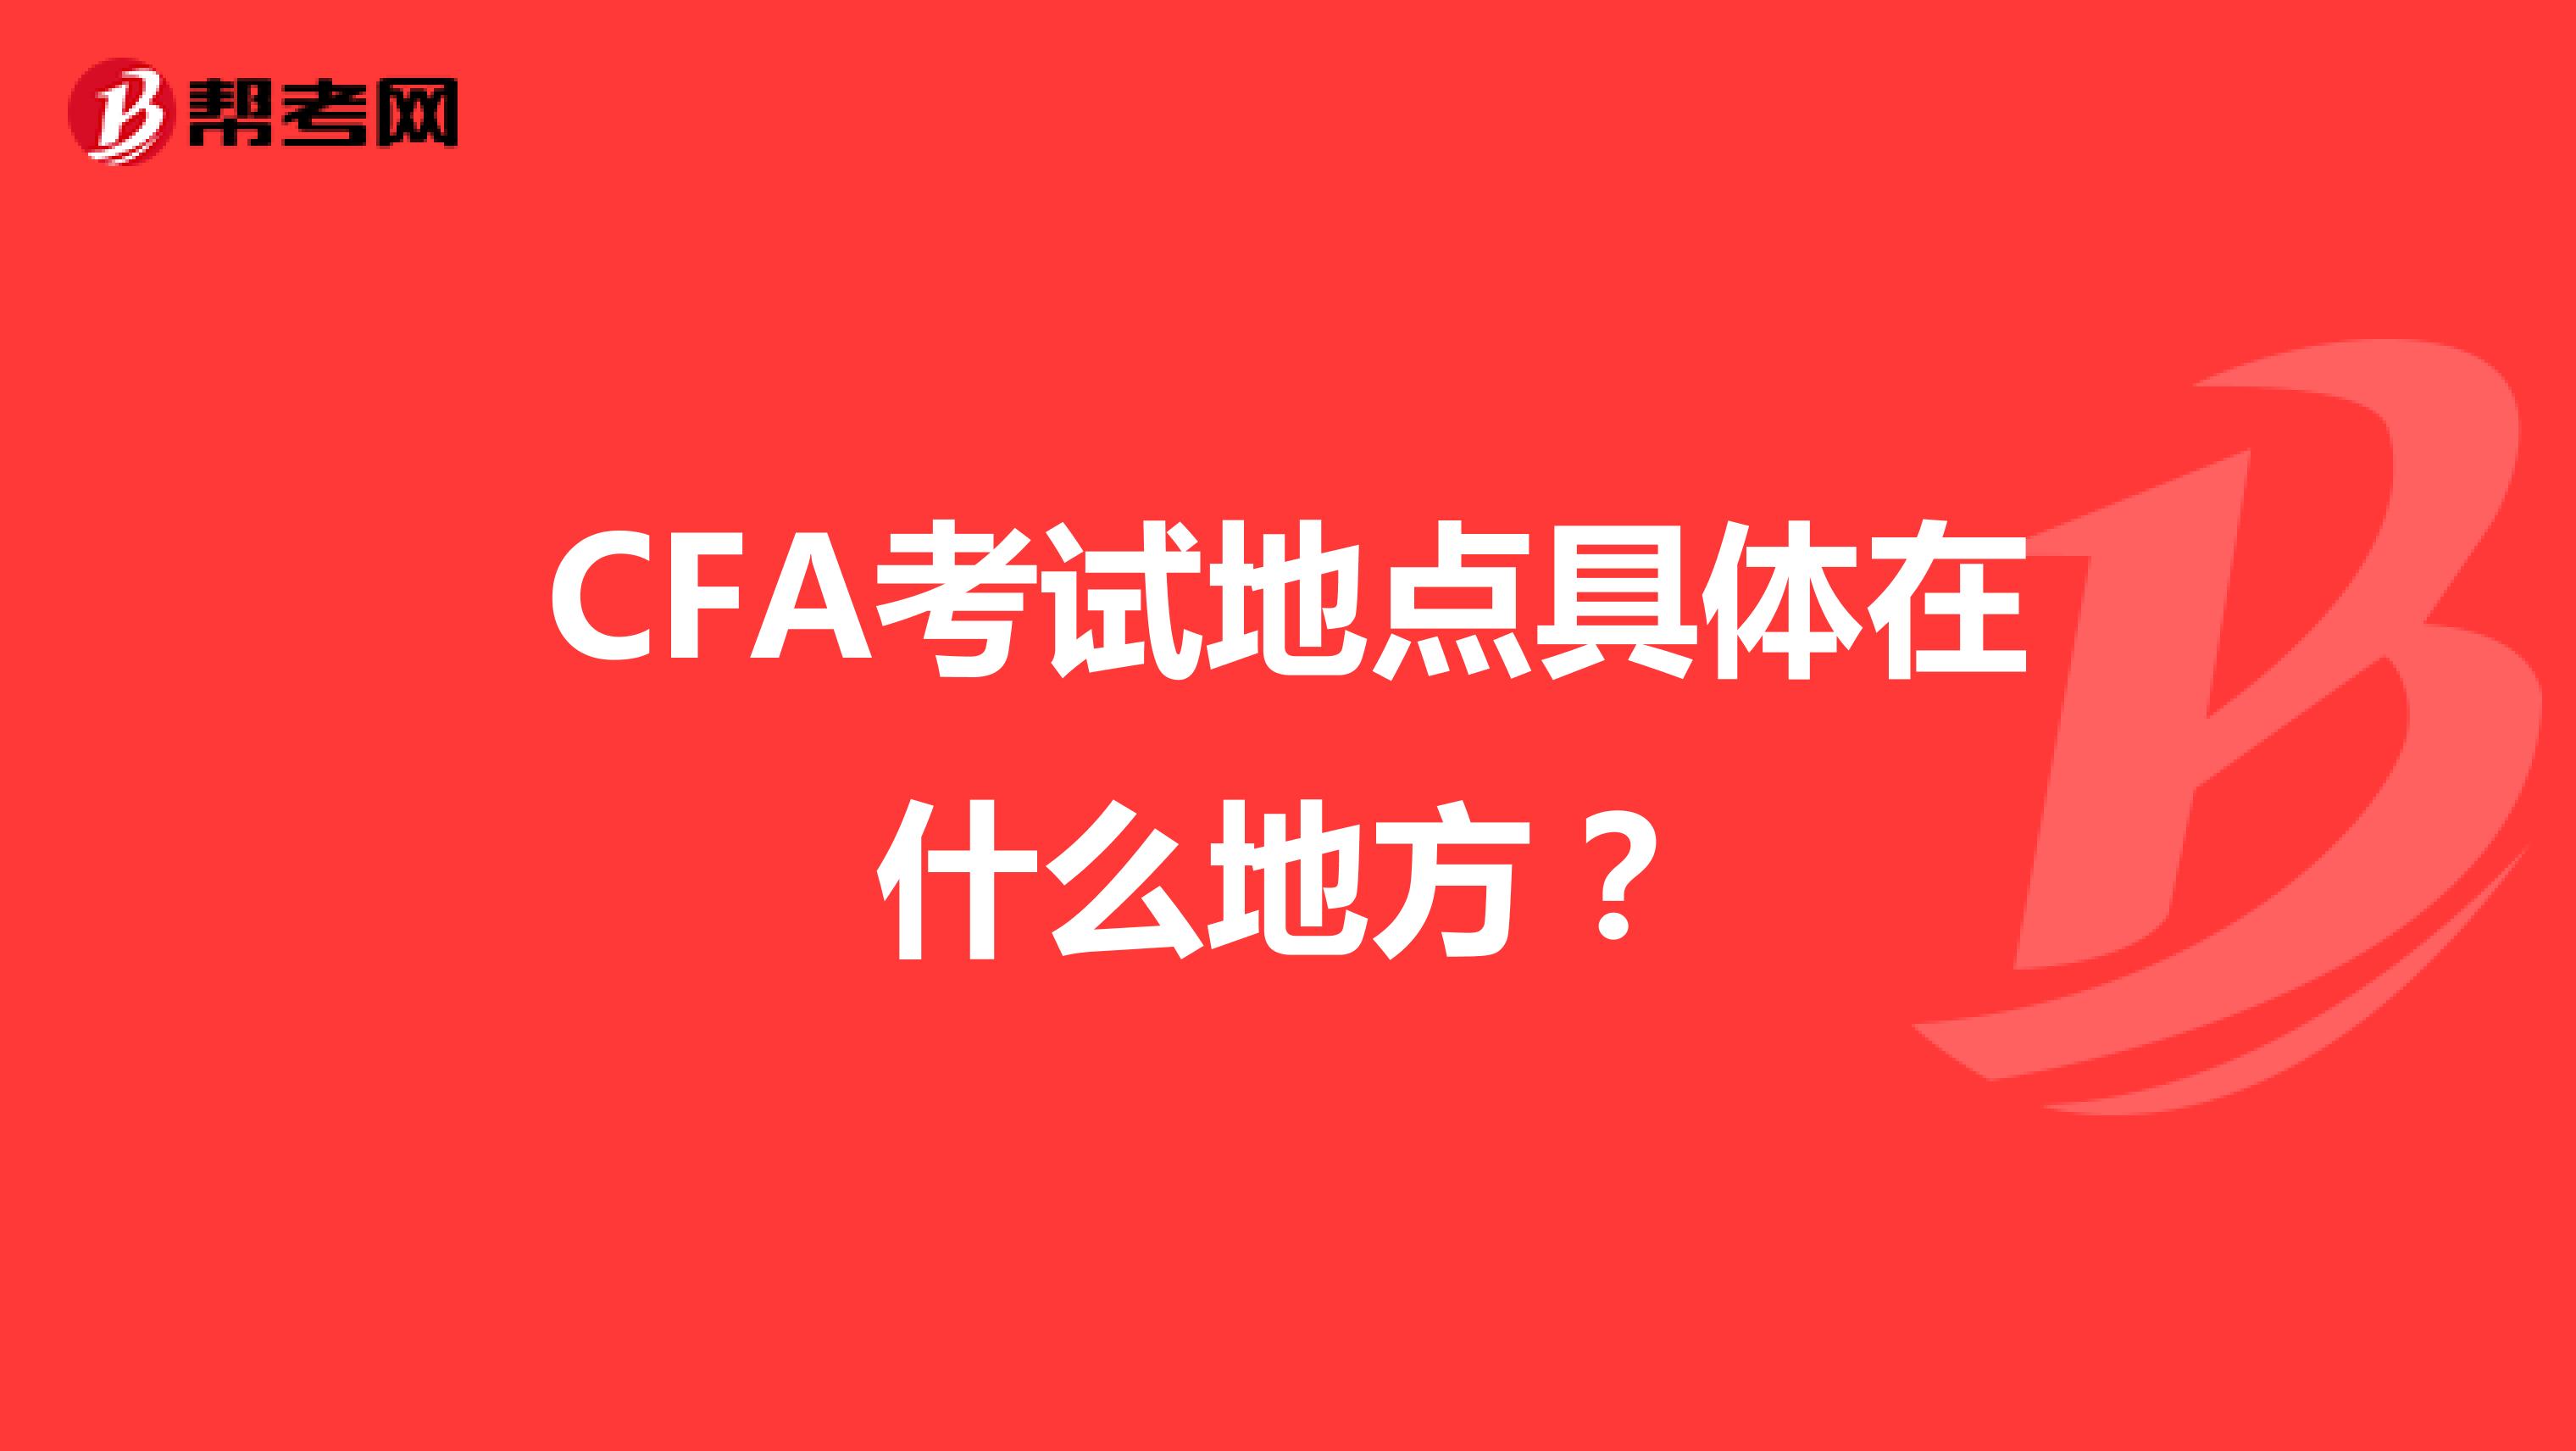 CFA考试地点具体在什么地方？